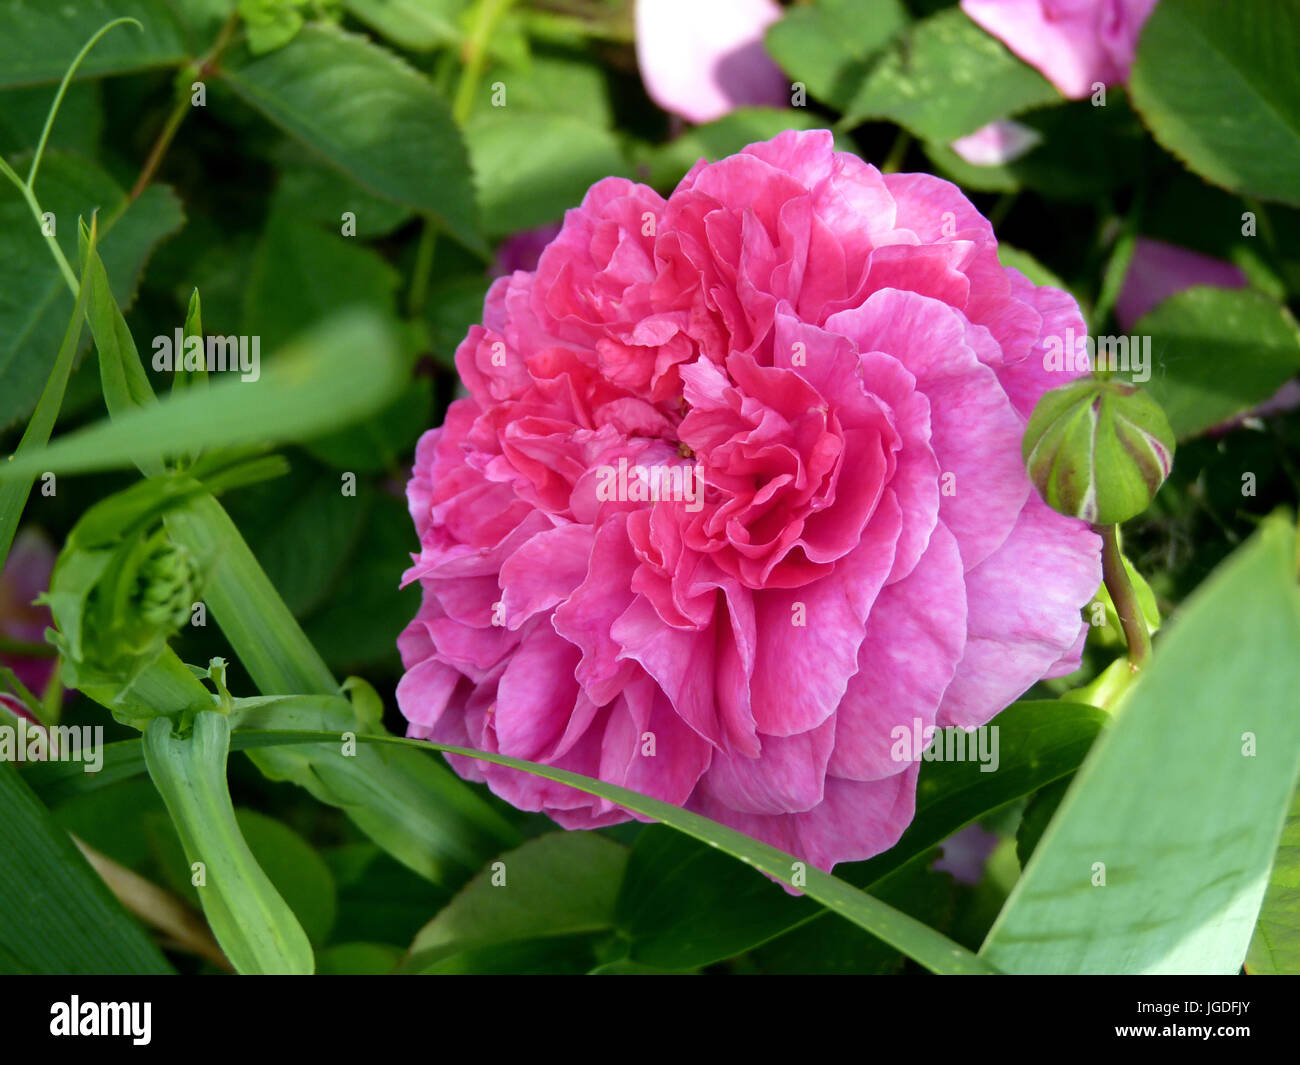 Pink rose flower in full bloom in garden or park Stock Photo